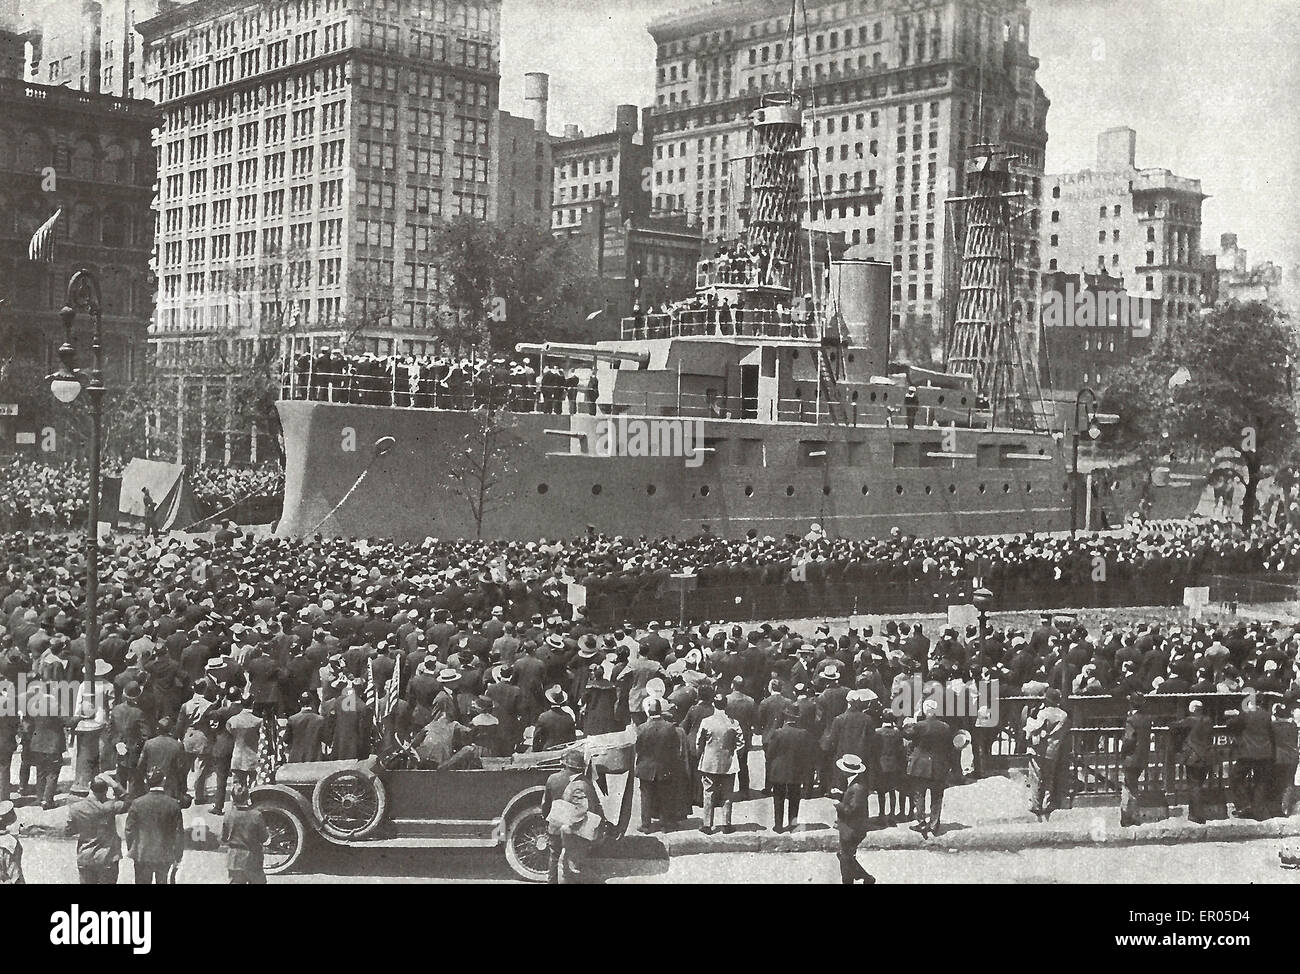 Chiamando Landsmen al Mare - Un Rally di reclutamento attorno ad una corazzata in legno 'moored' vicino a Broadway in Union Square di New York City, 1917 Foto Stock